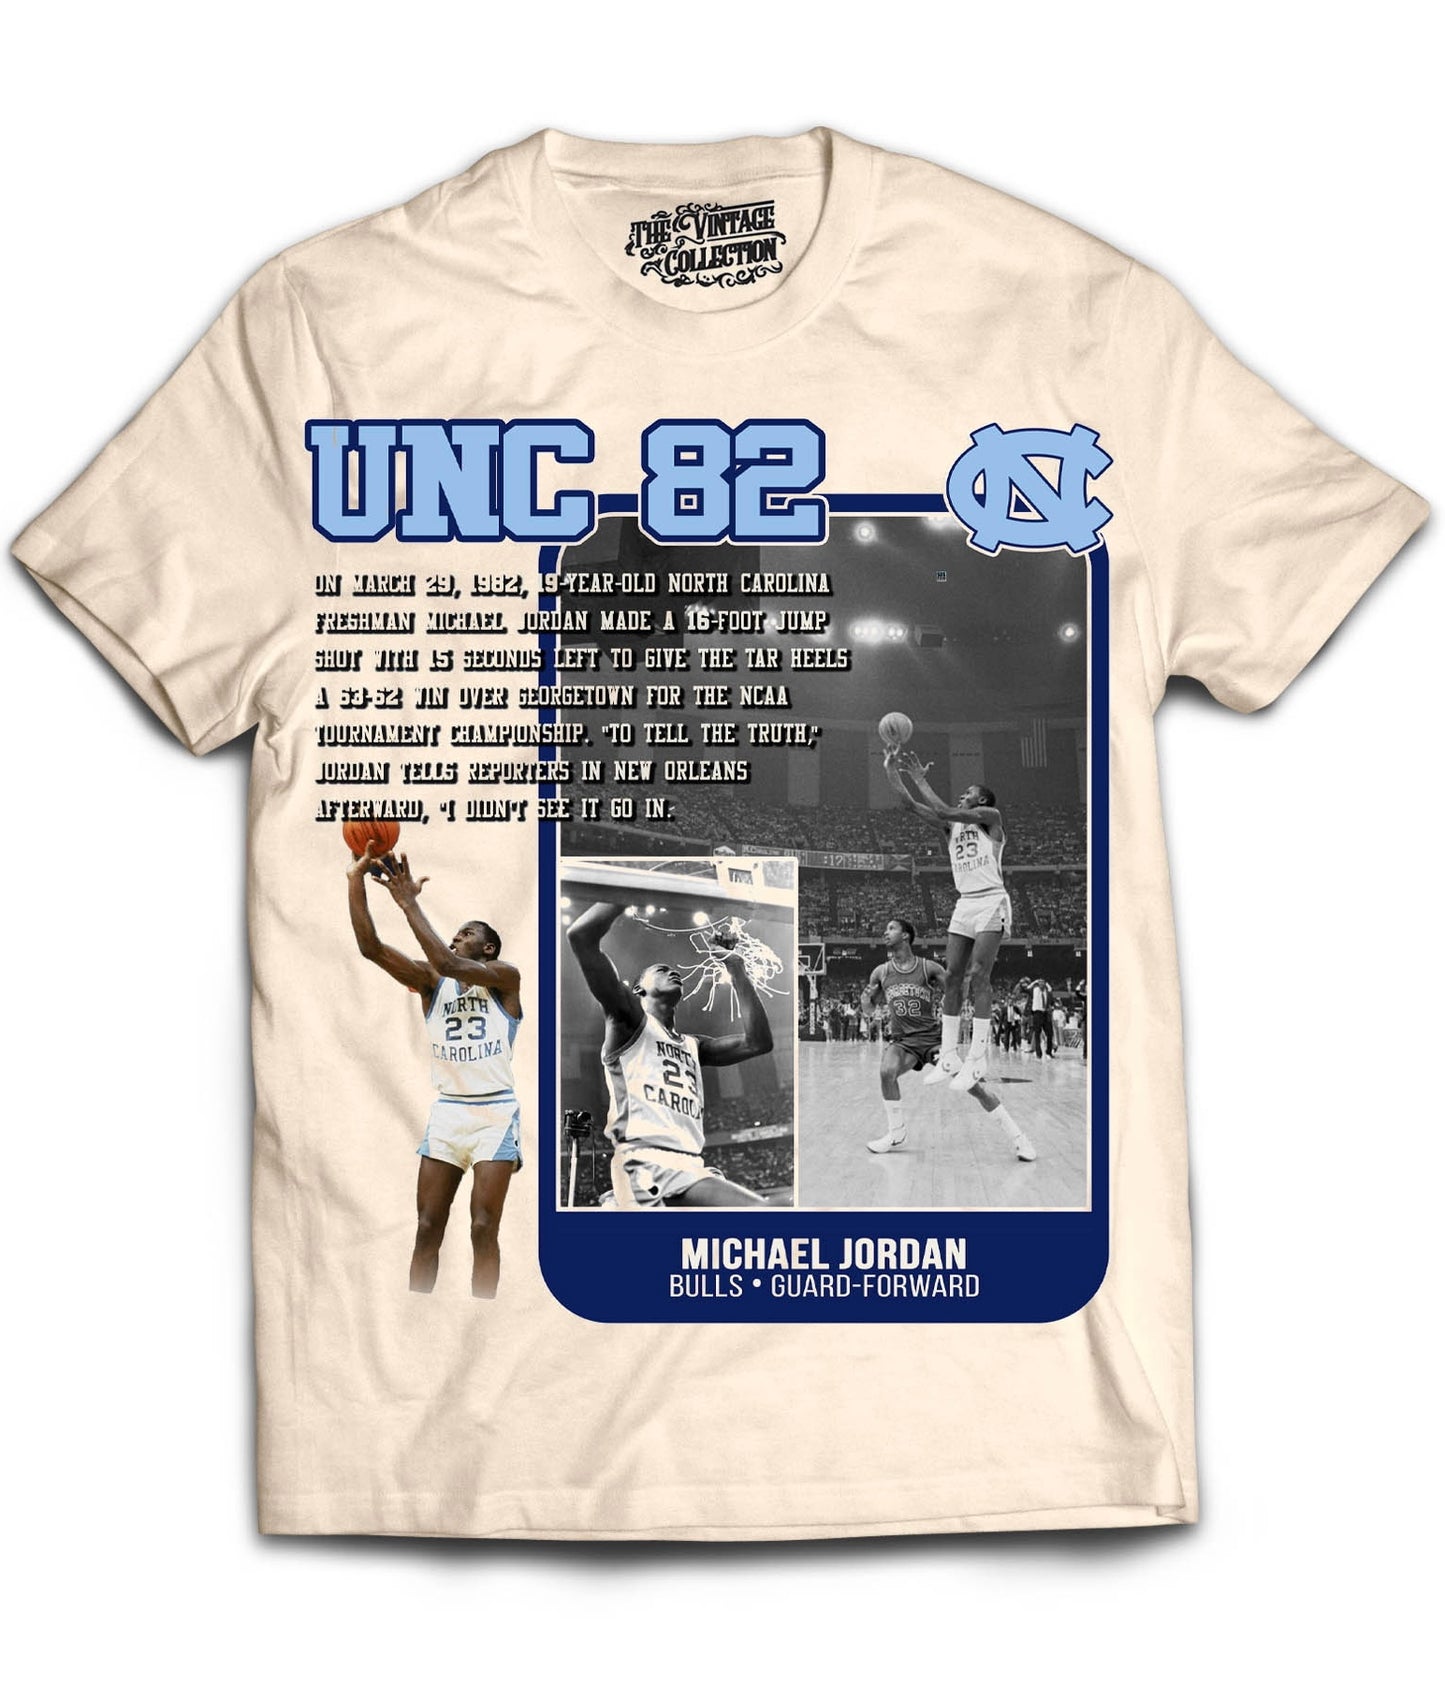 UNC 82 GOAT Tribute T-Shirt (CREAM)